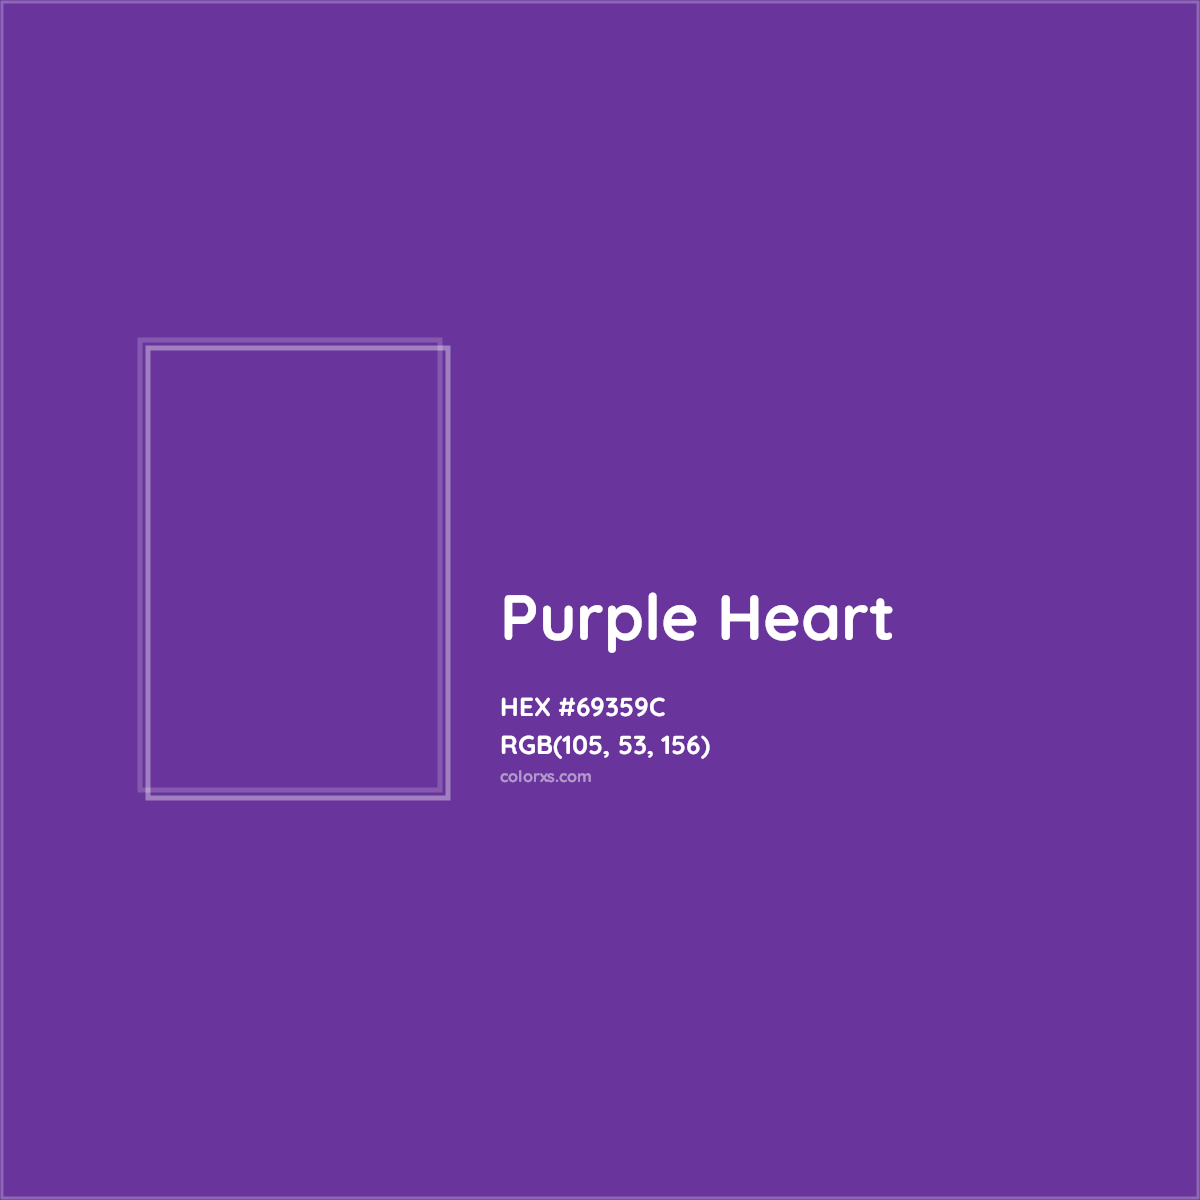 HEX #69359C Purple Heart Color - Color Code